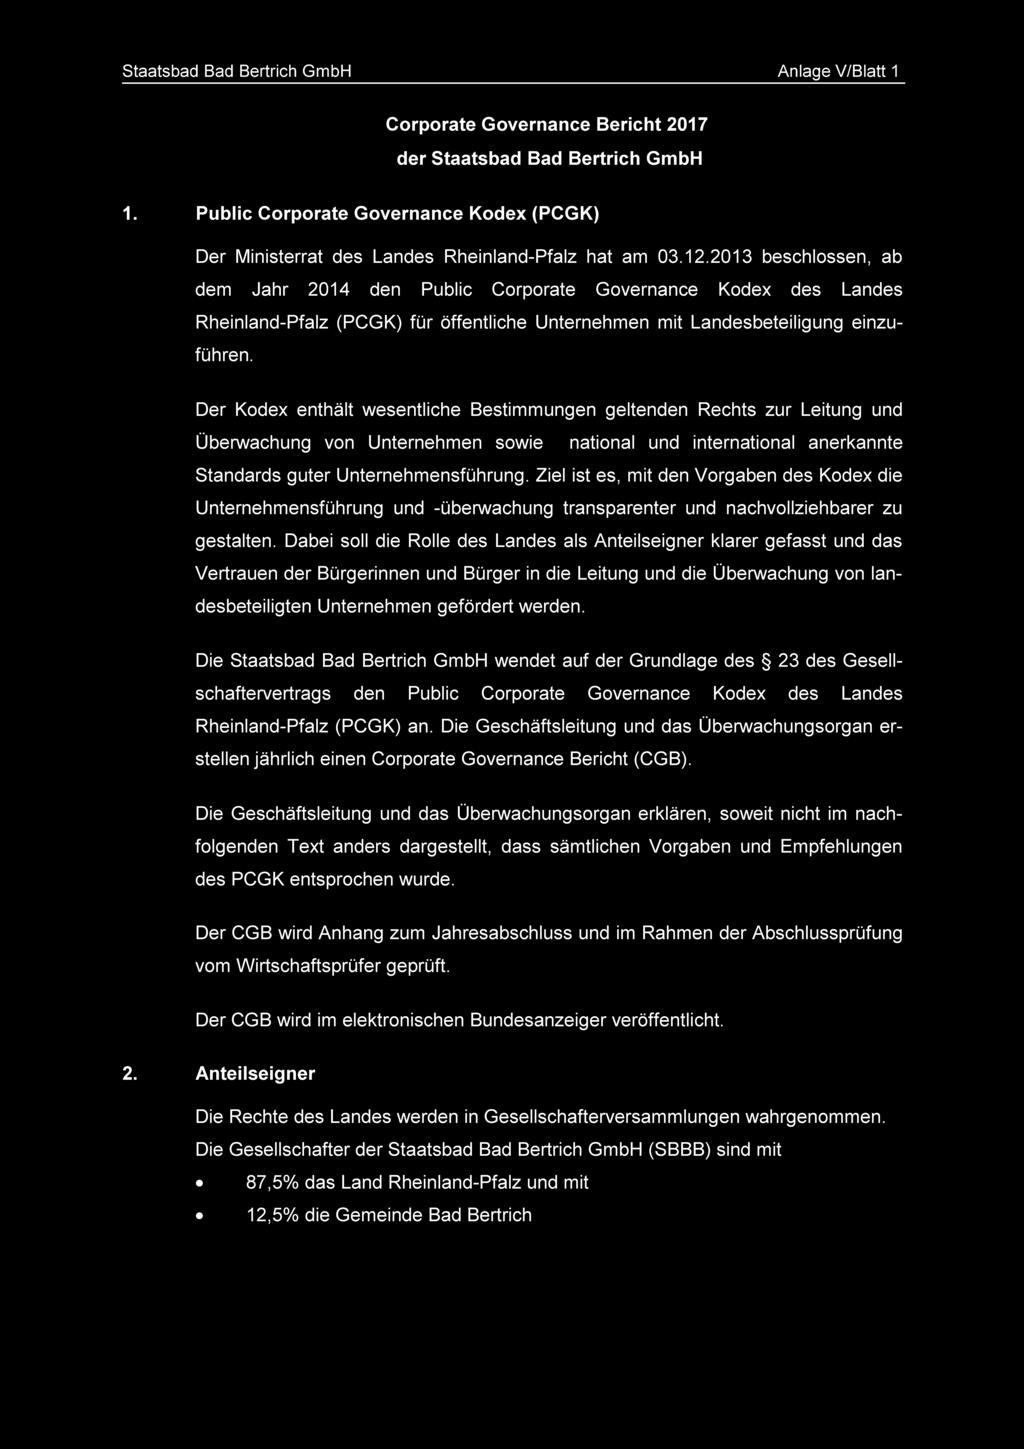 2013 beschlossen, ab dem Jahr 2014 den Public Corporate Governance Kodex des Landes Rheinland-Pfalz (PCGK) für öffentliche Unternehmen mit Landesbeteiligung einzuführen.